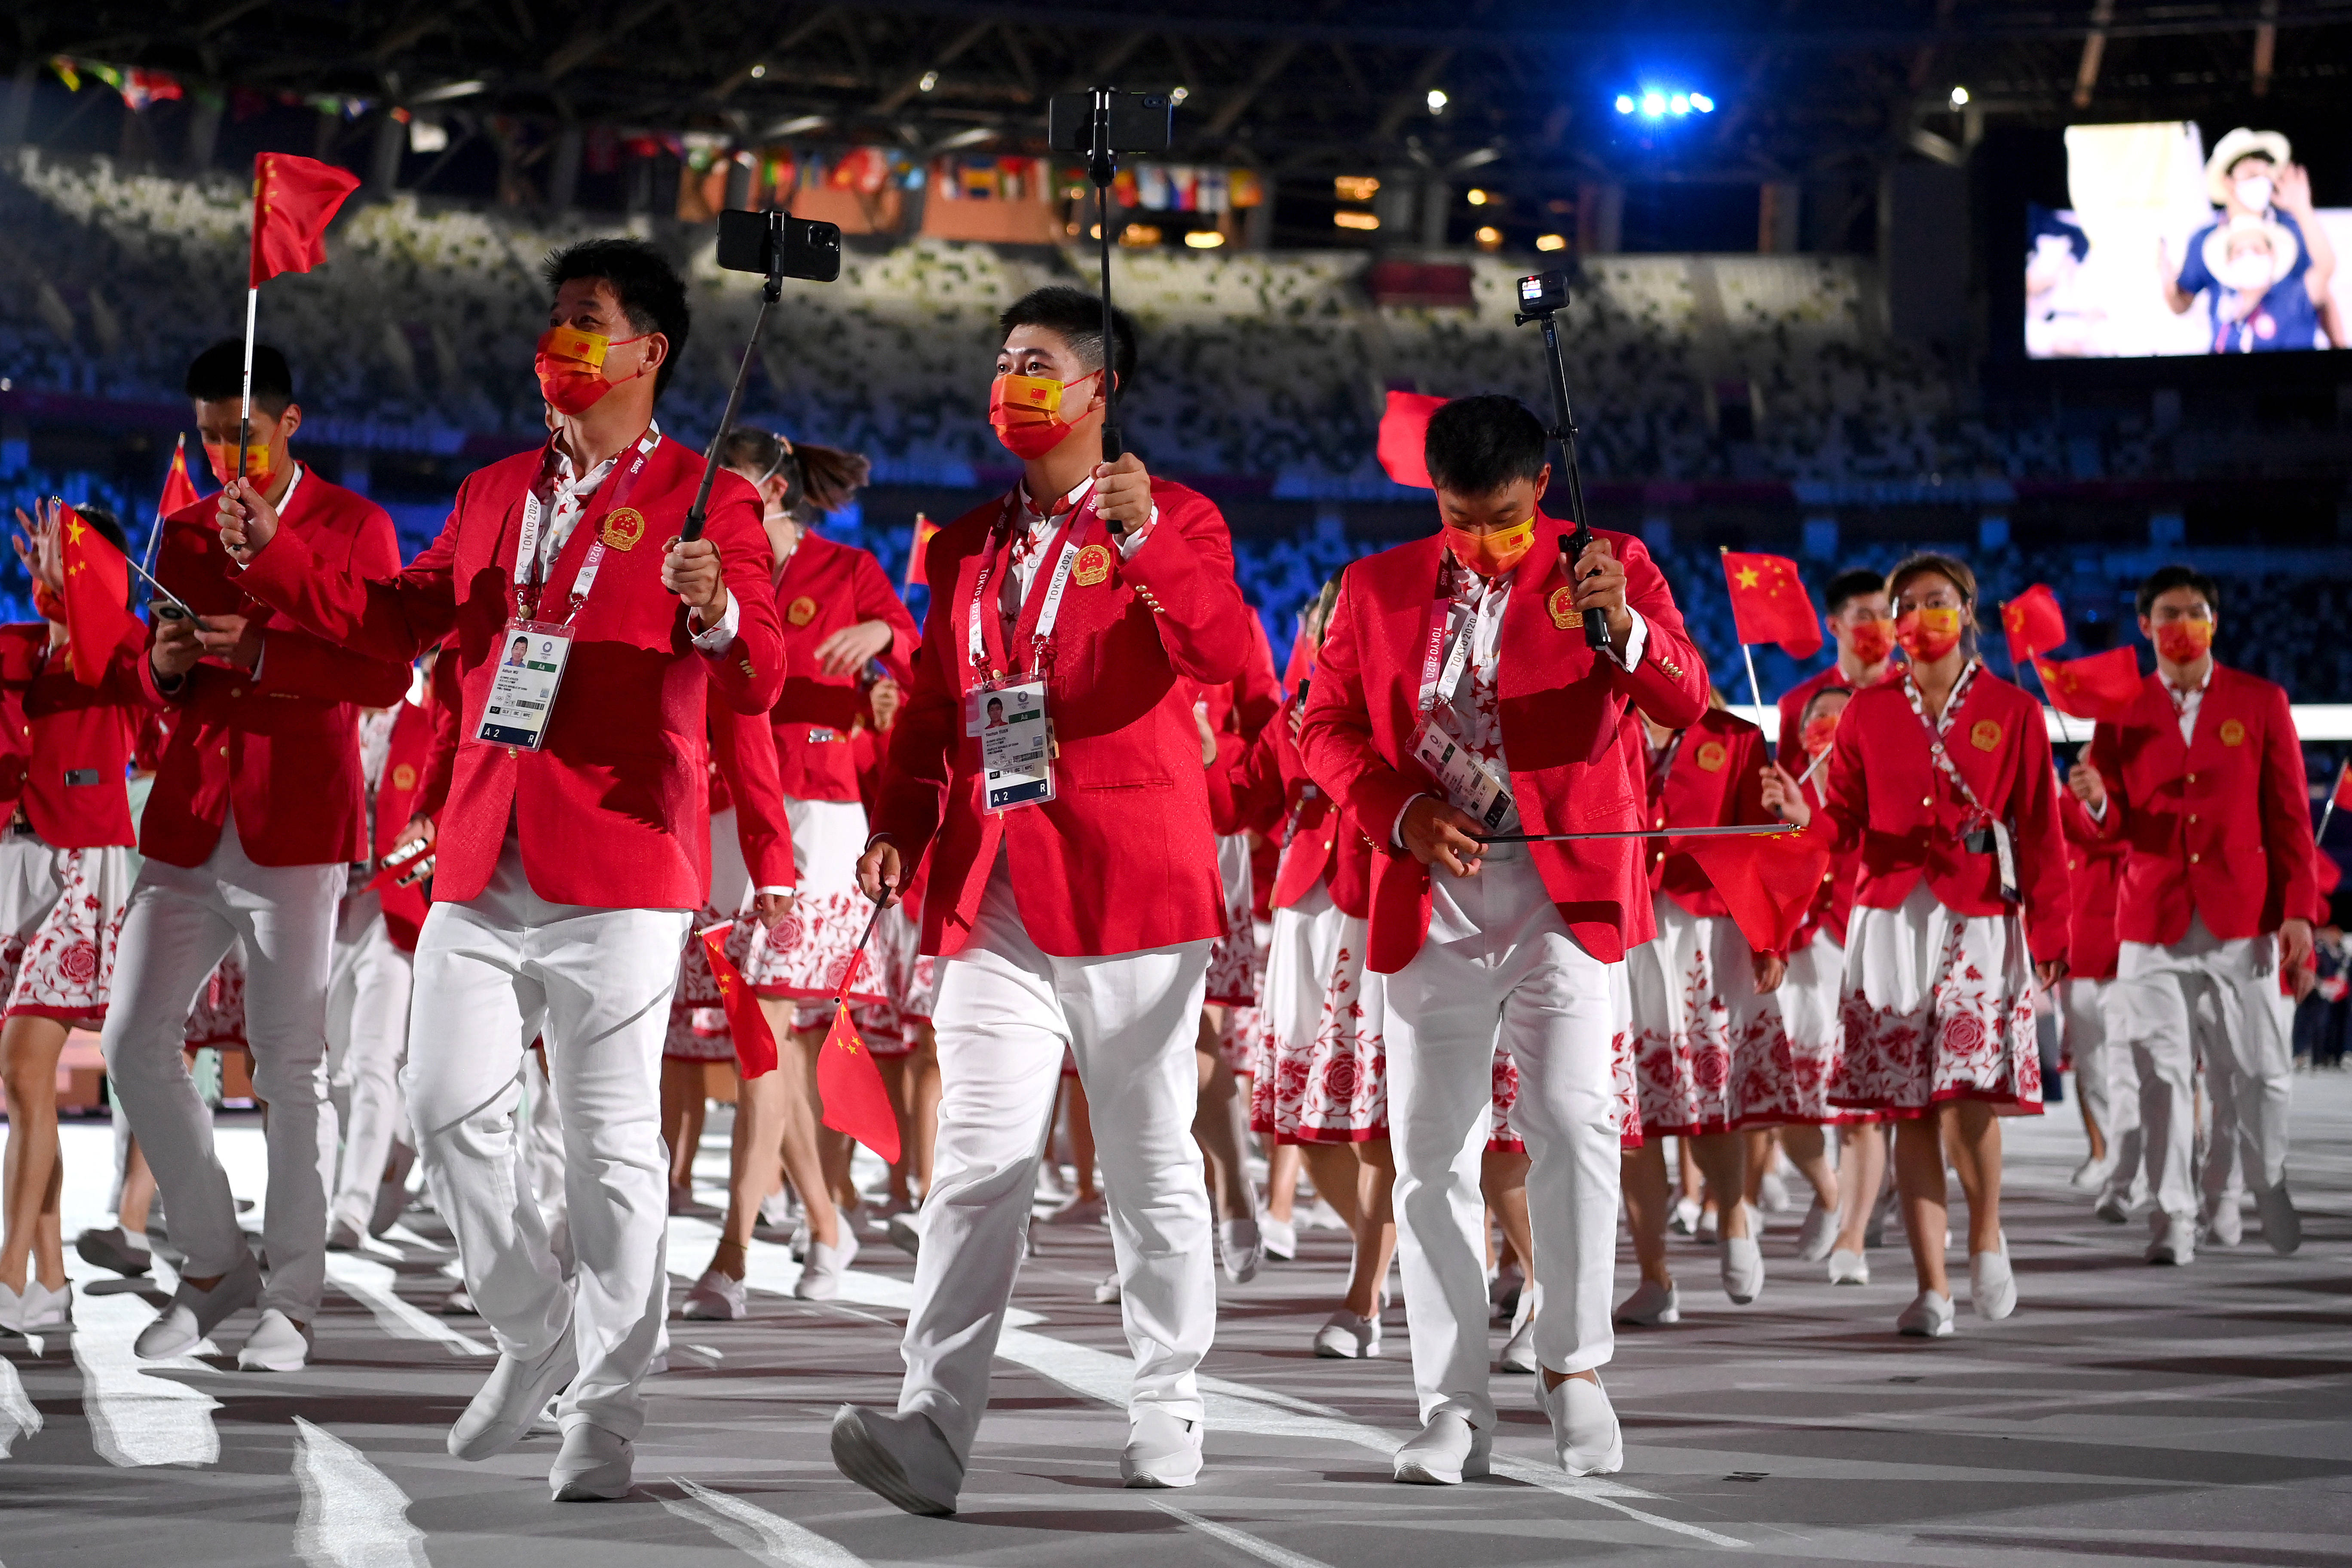 精美图片播报:2020年东京奥运会开幕式,中国代表团出场,双旗手领衔